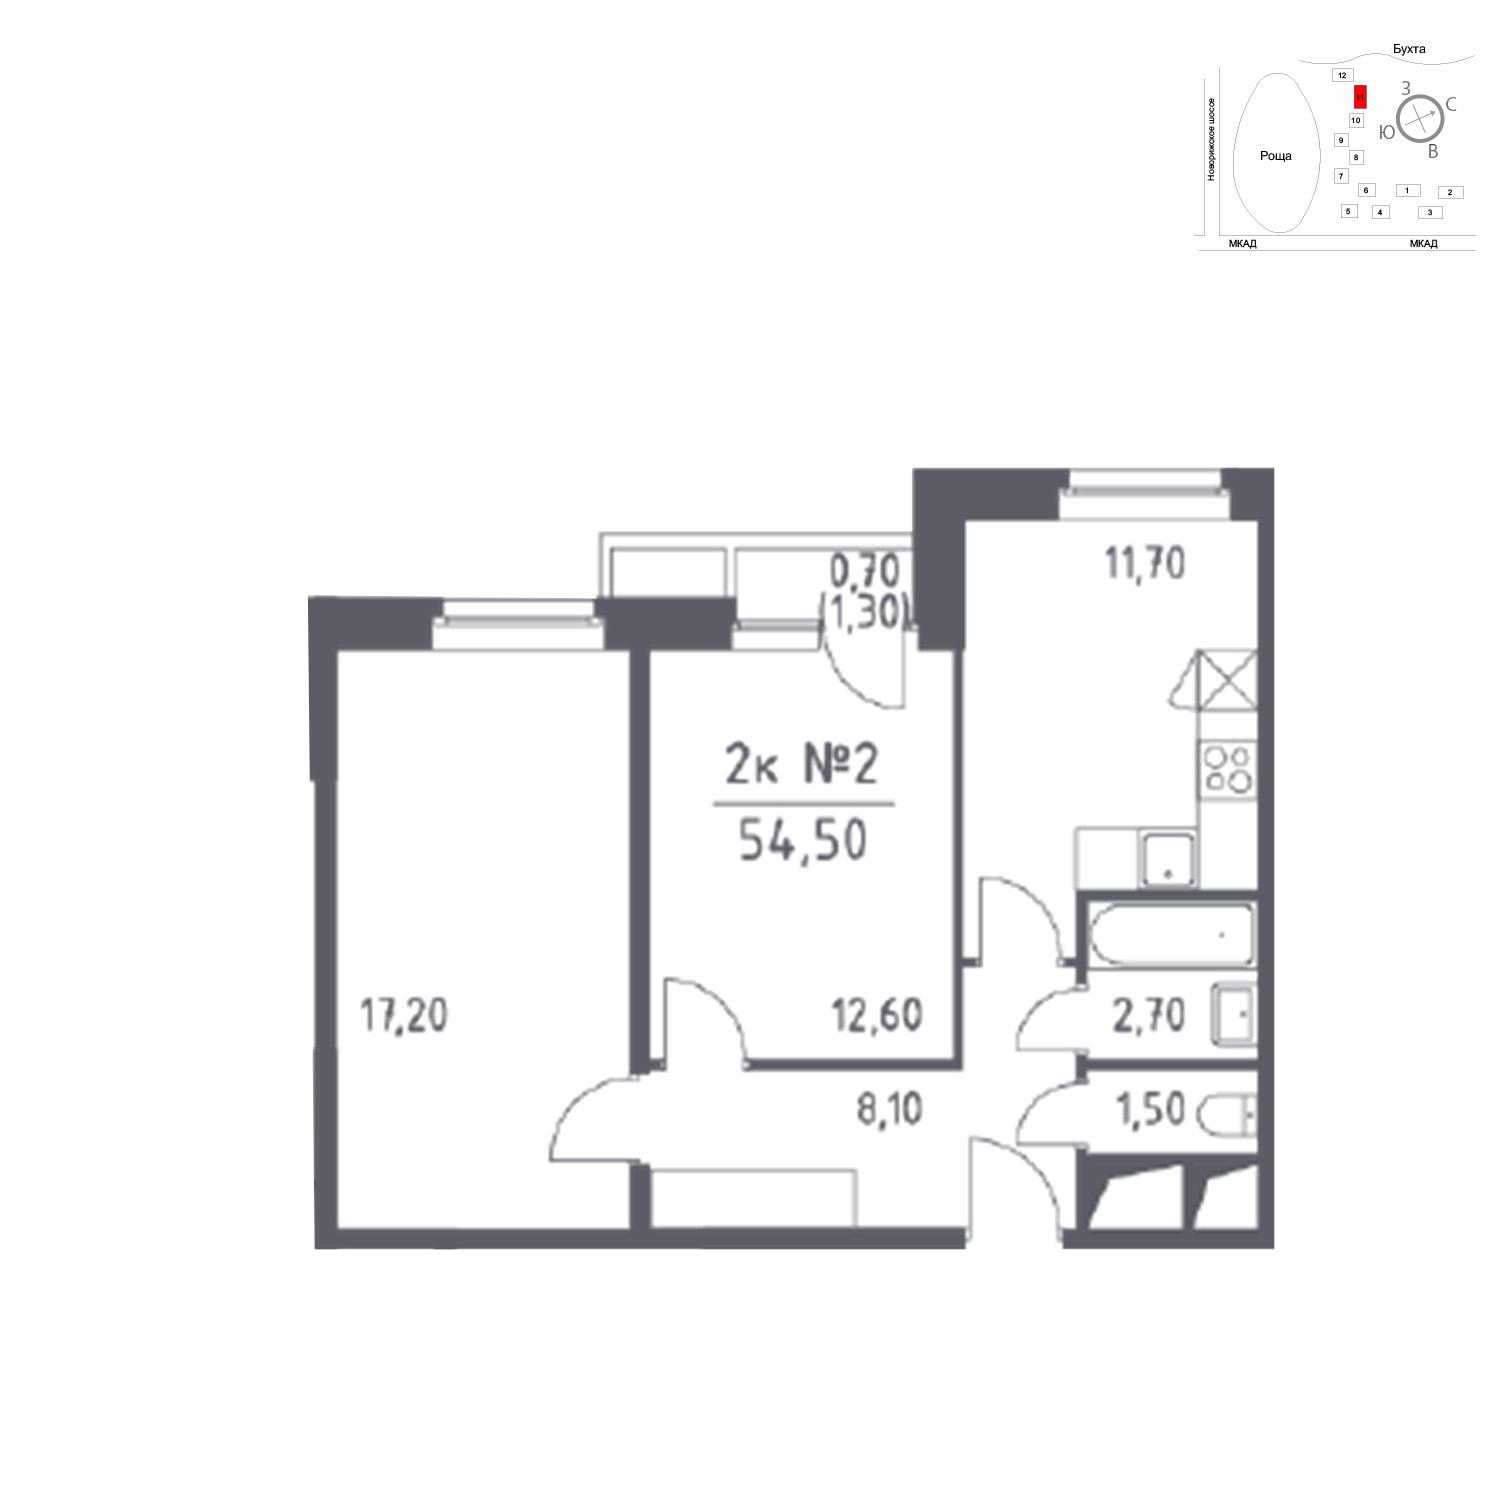 Продаётся 2-комнатная квартира в новостройке 54.5 кв.м. этаж 12/33 за 0 руб 